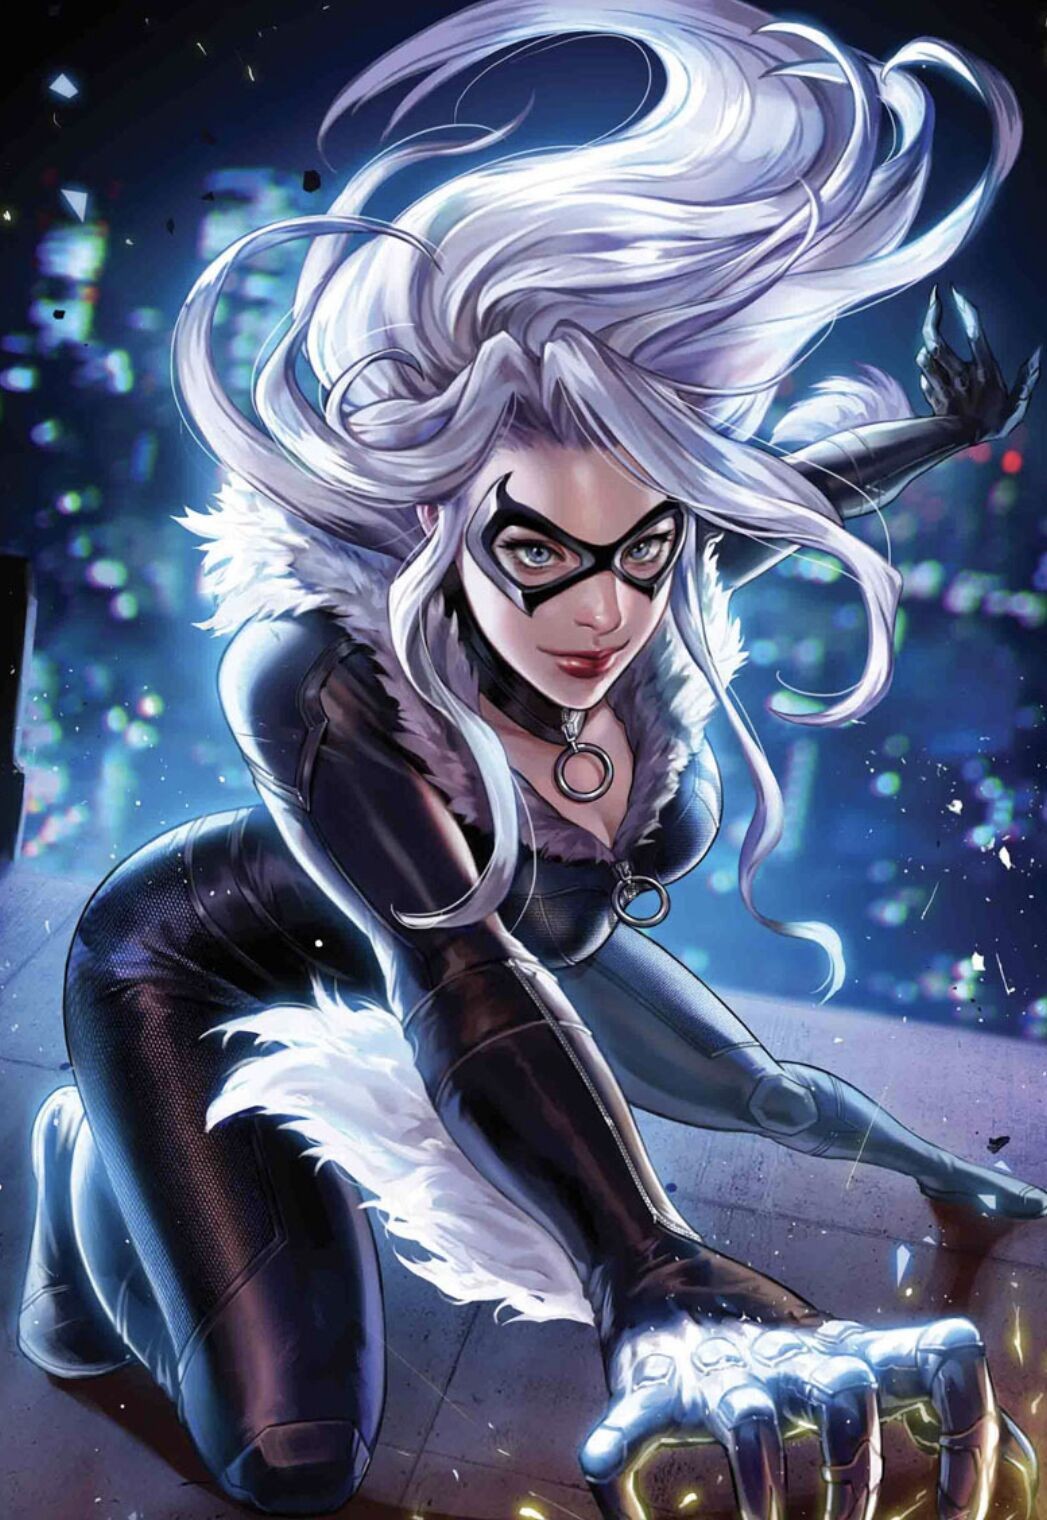 漫威又一個女英雄來了！ 安雅或加盟蜘蛛俠宇宙，演身材惹火的黑貓